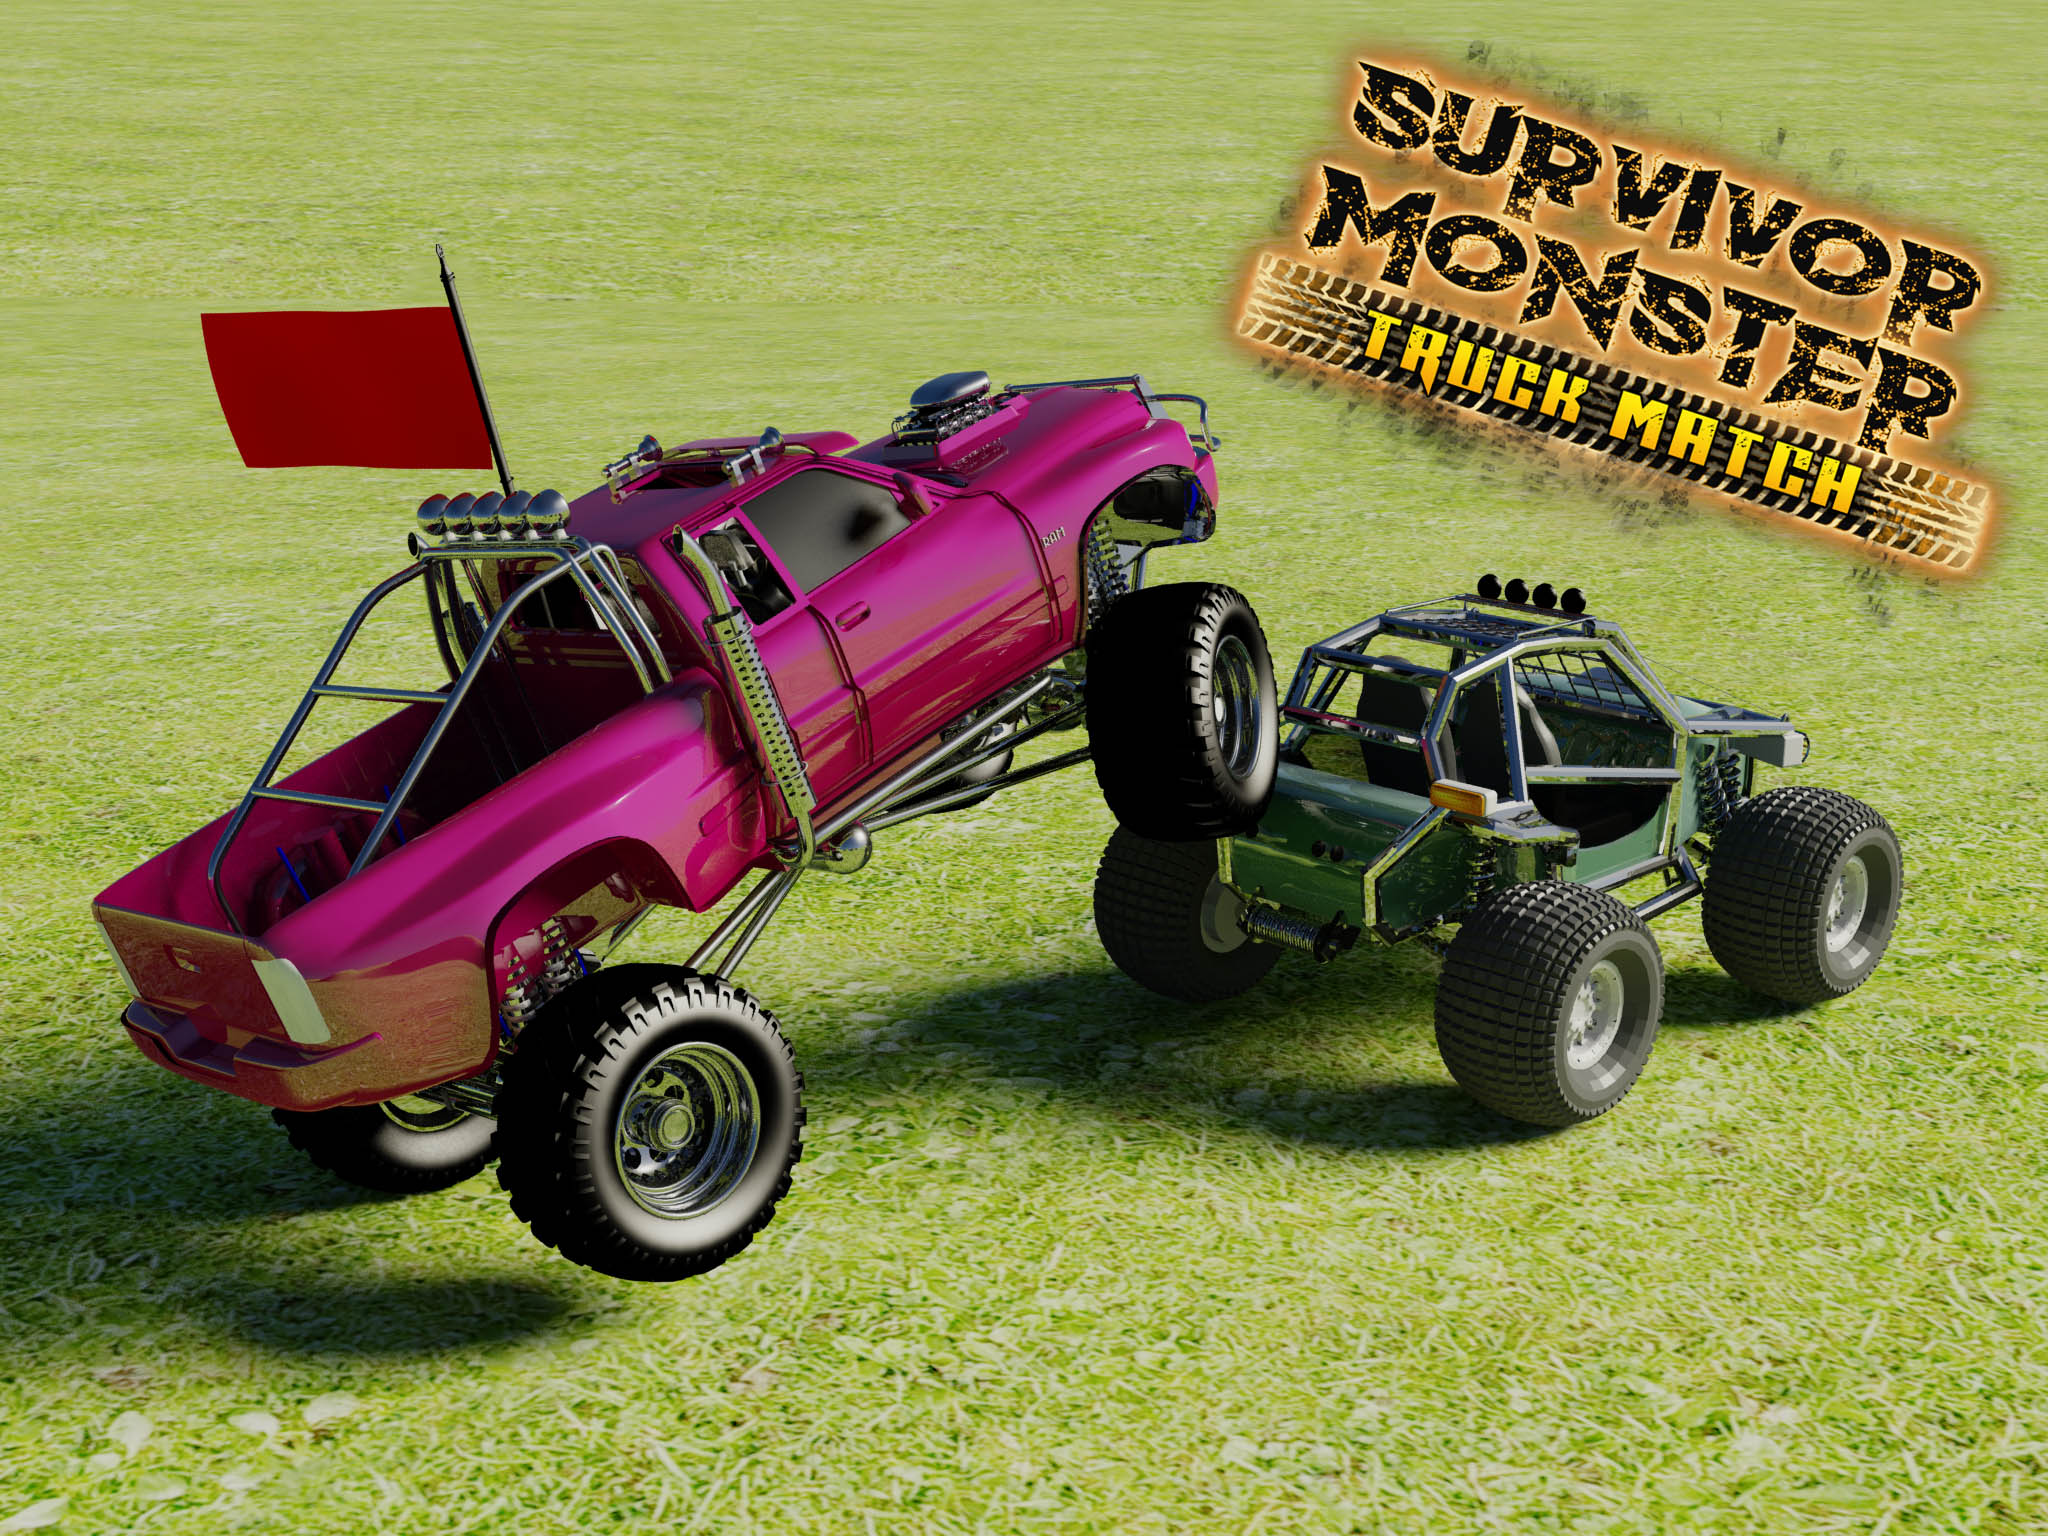 survivor monster truck match